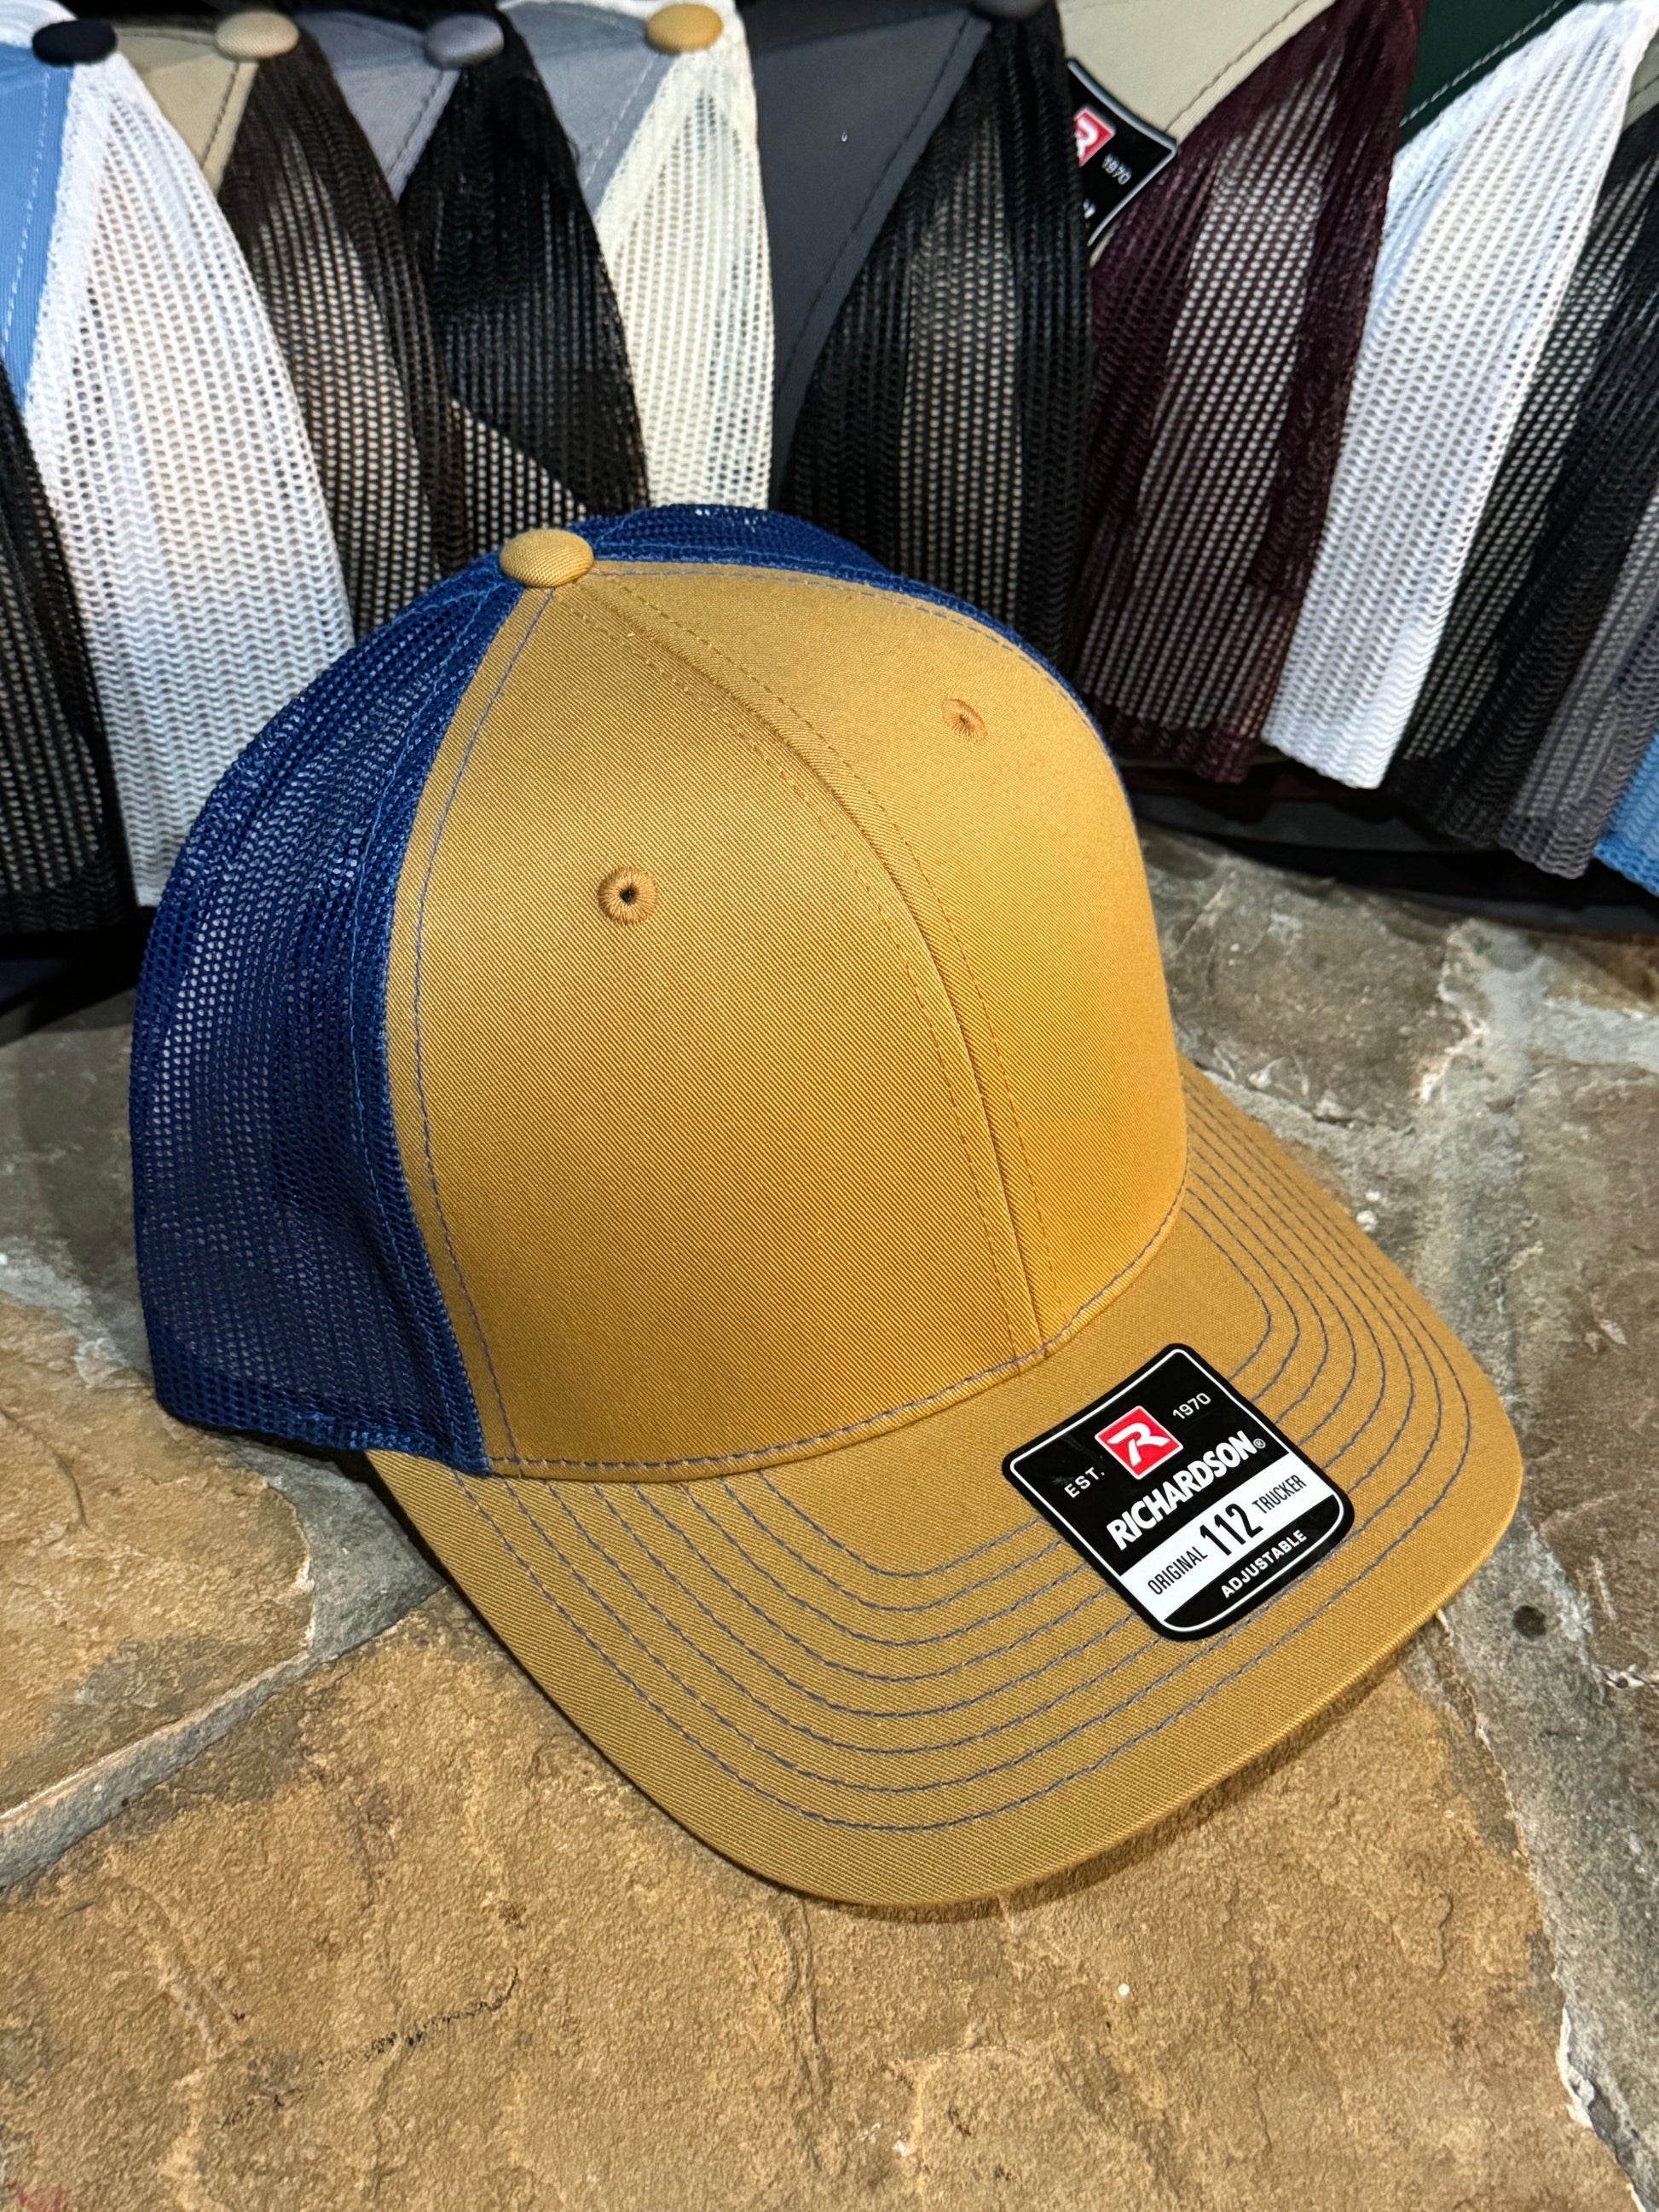 Fishing hat, Richardson 112 Custom, your Logo hat, custom leather patc –  Thompson Engraving